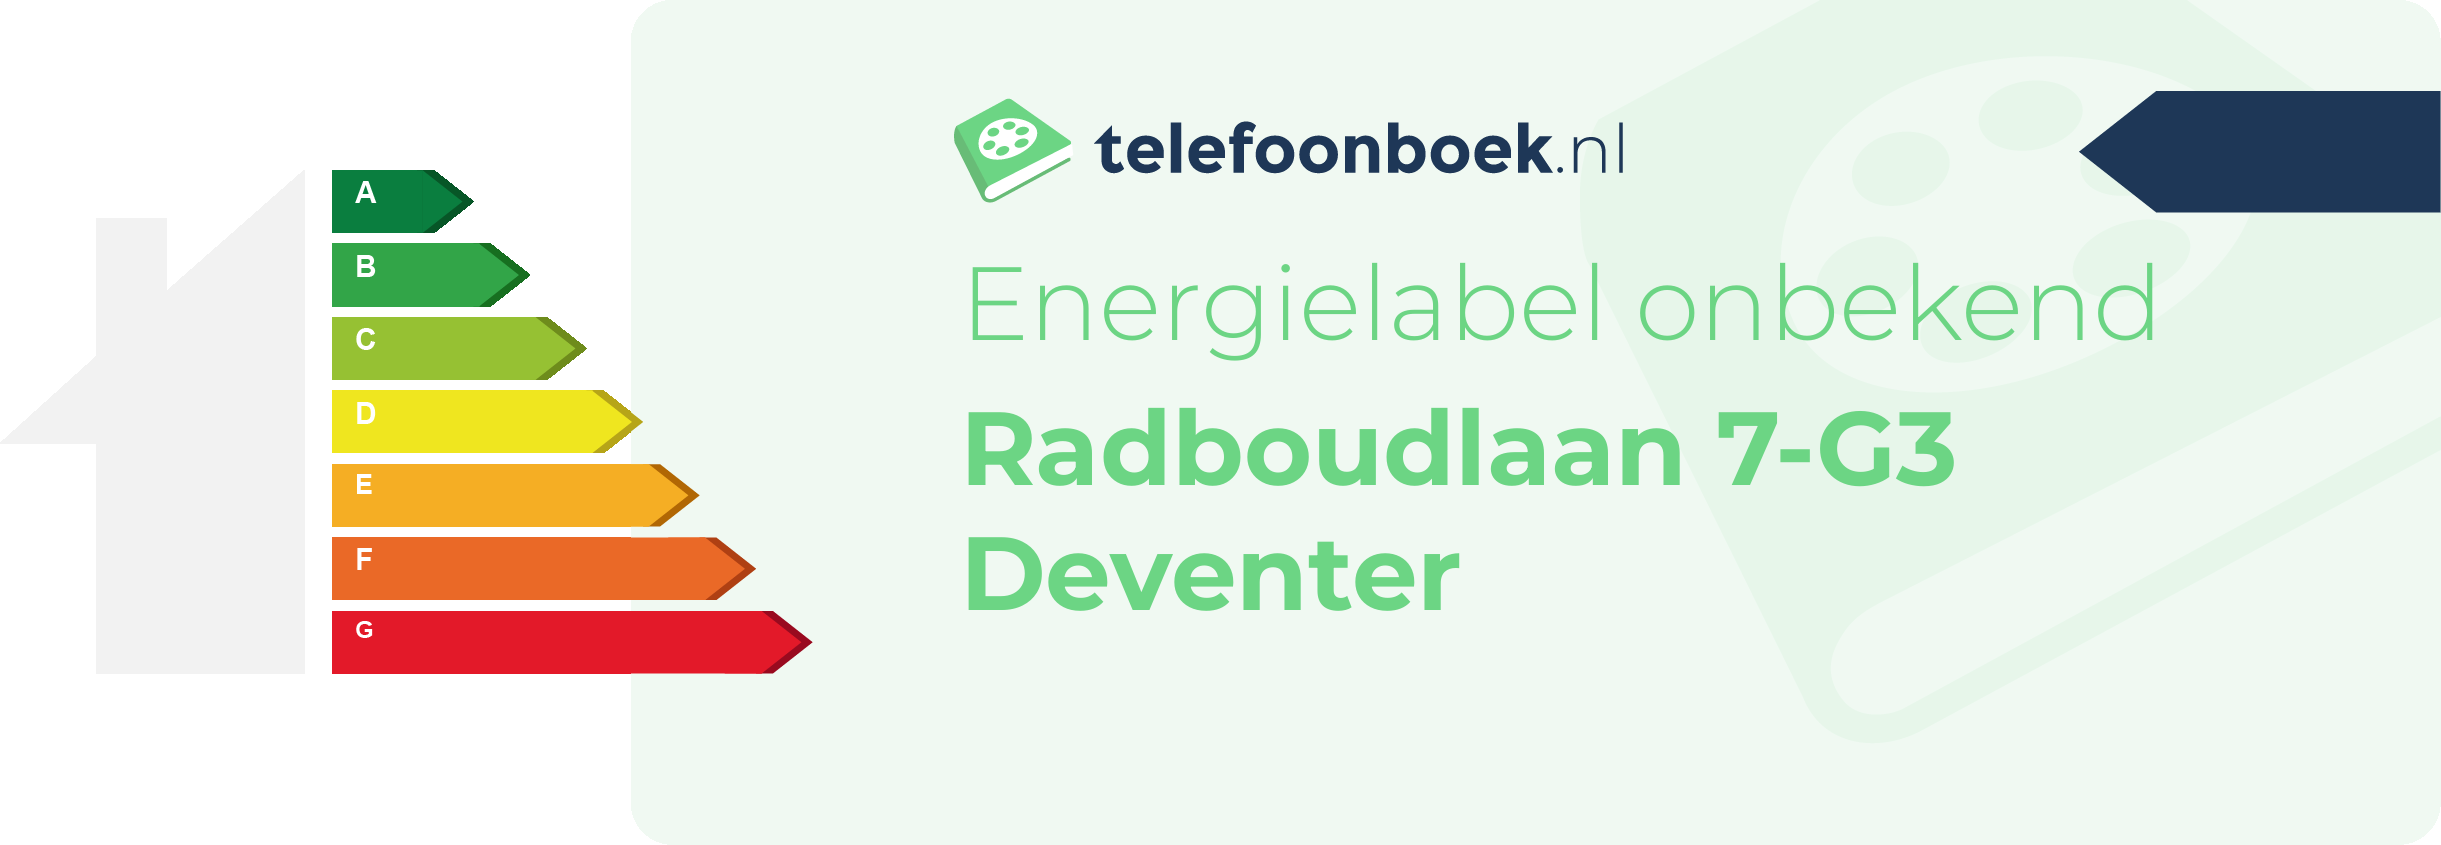 Energielabel Radboudlaan 7-G3 Deventer